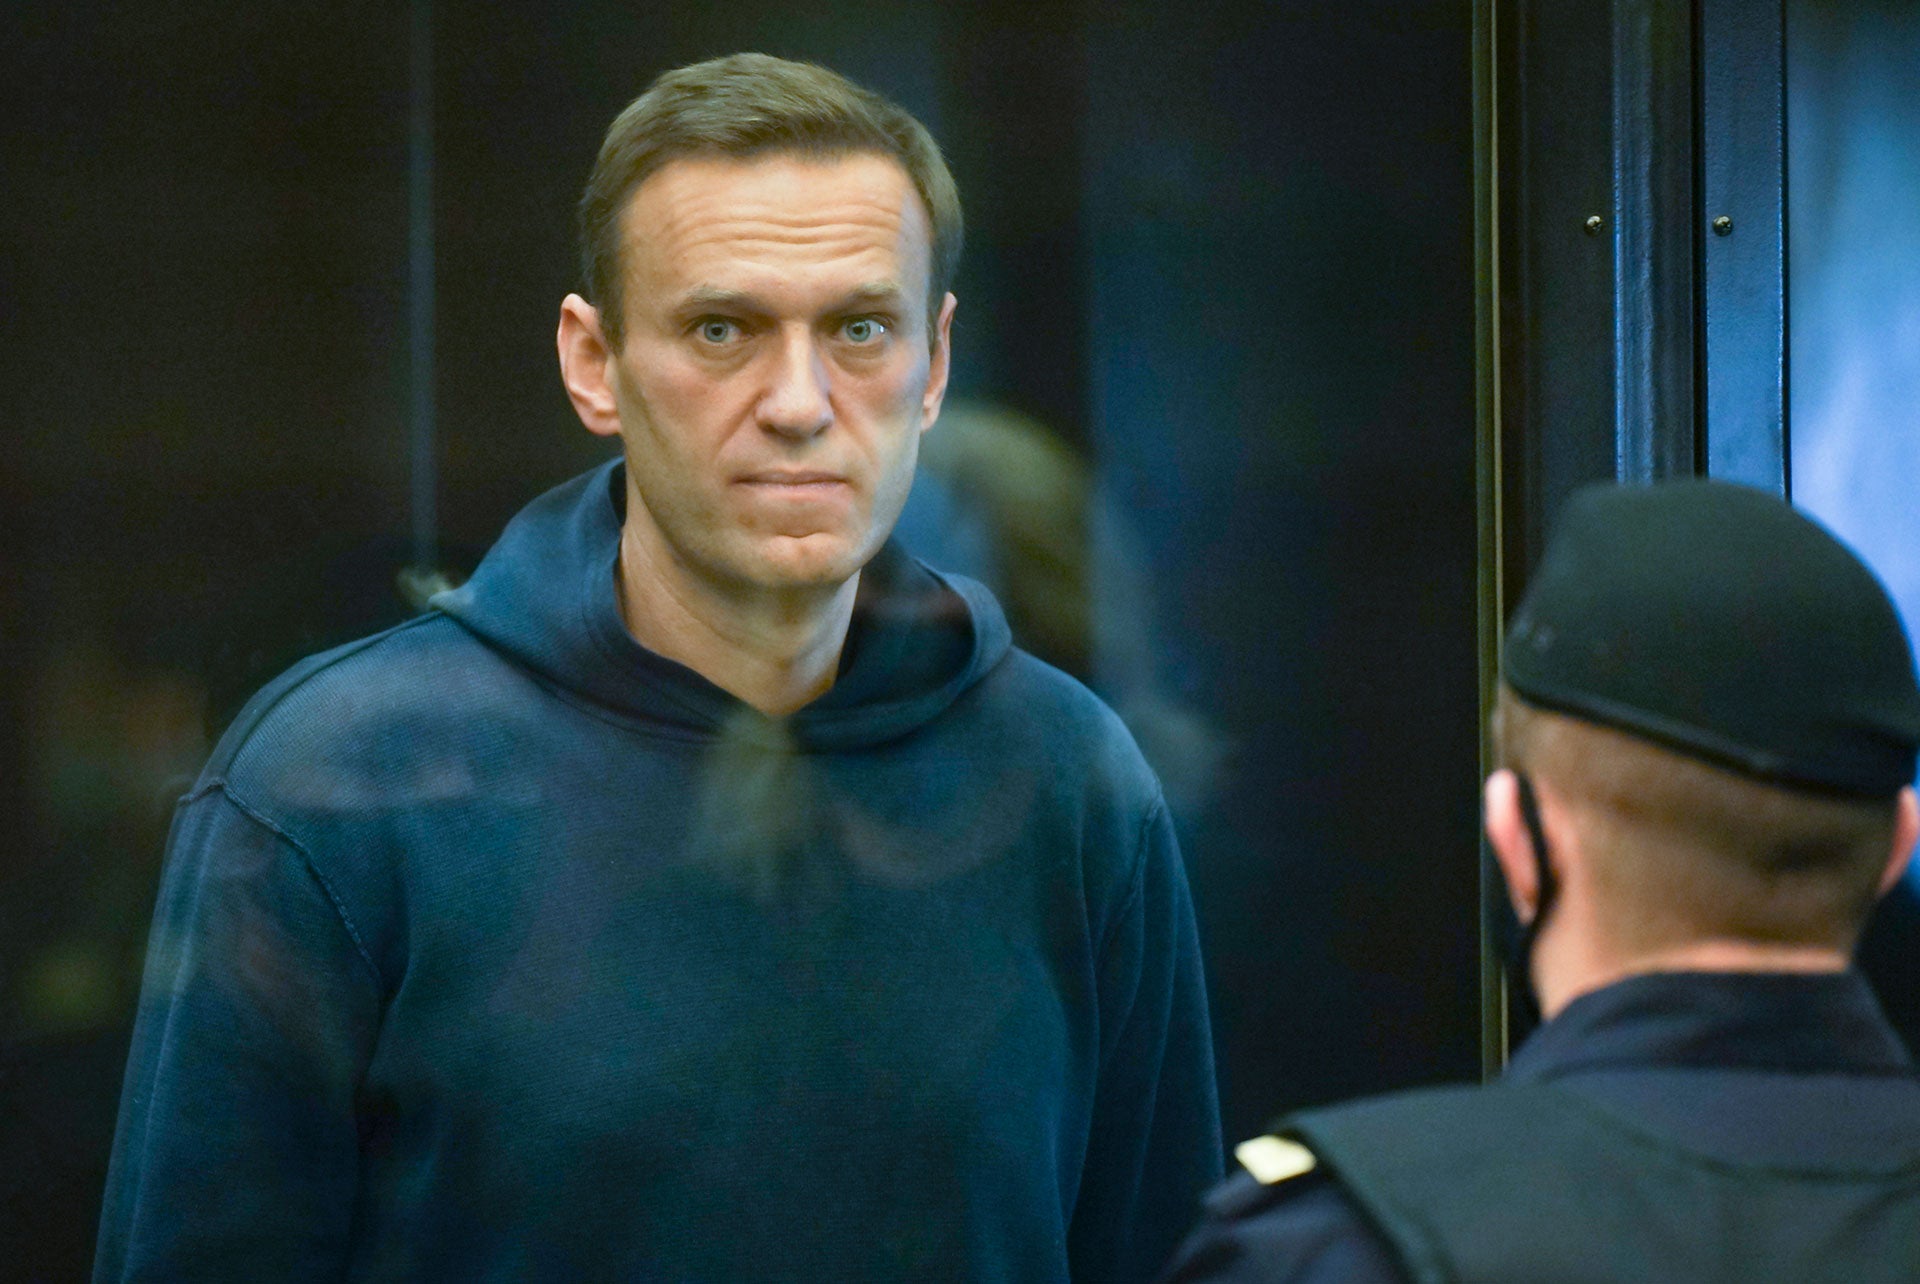 L’opposant russe Alexeï Navalny photographié au Tribunal municipal de Moscou le 2 février 2021, lors de son procès à l’issue duquel il a été condamné à 3 ans et demi de prison (soit une peine effective de deux ans et huit mois).